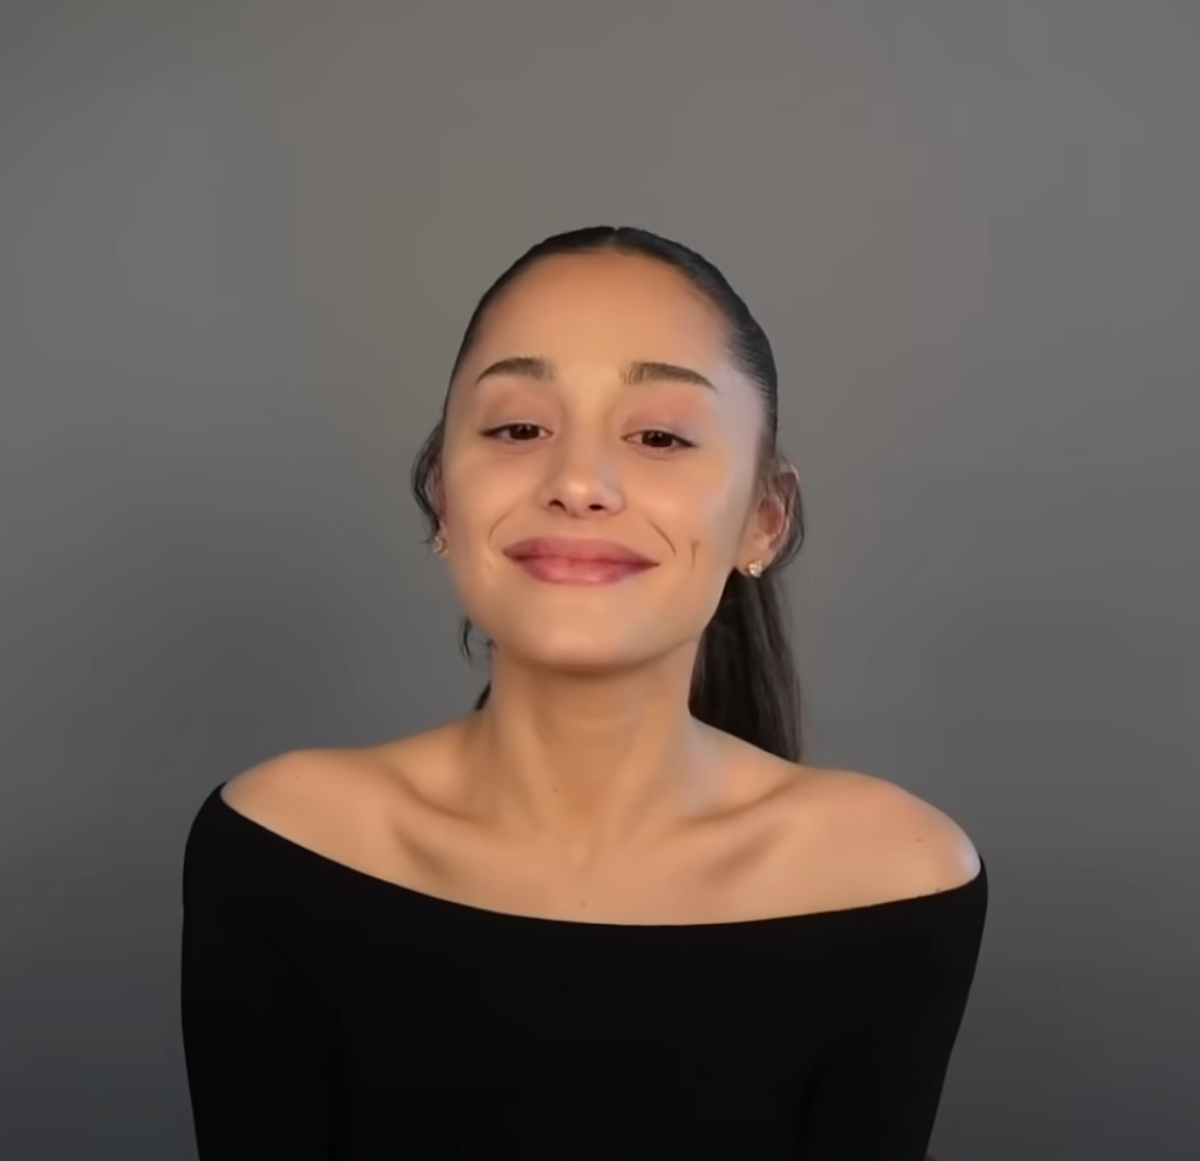 Ariana Grande Without Makeup 2022